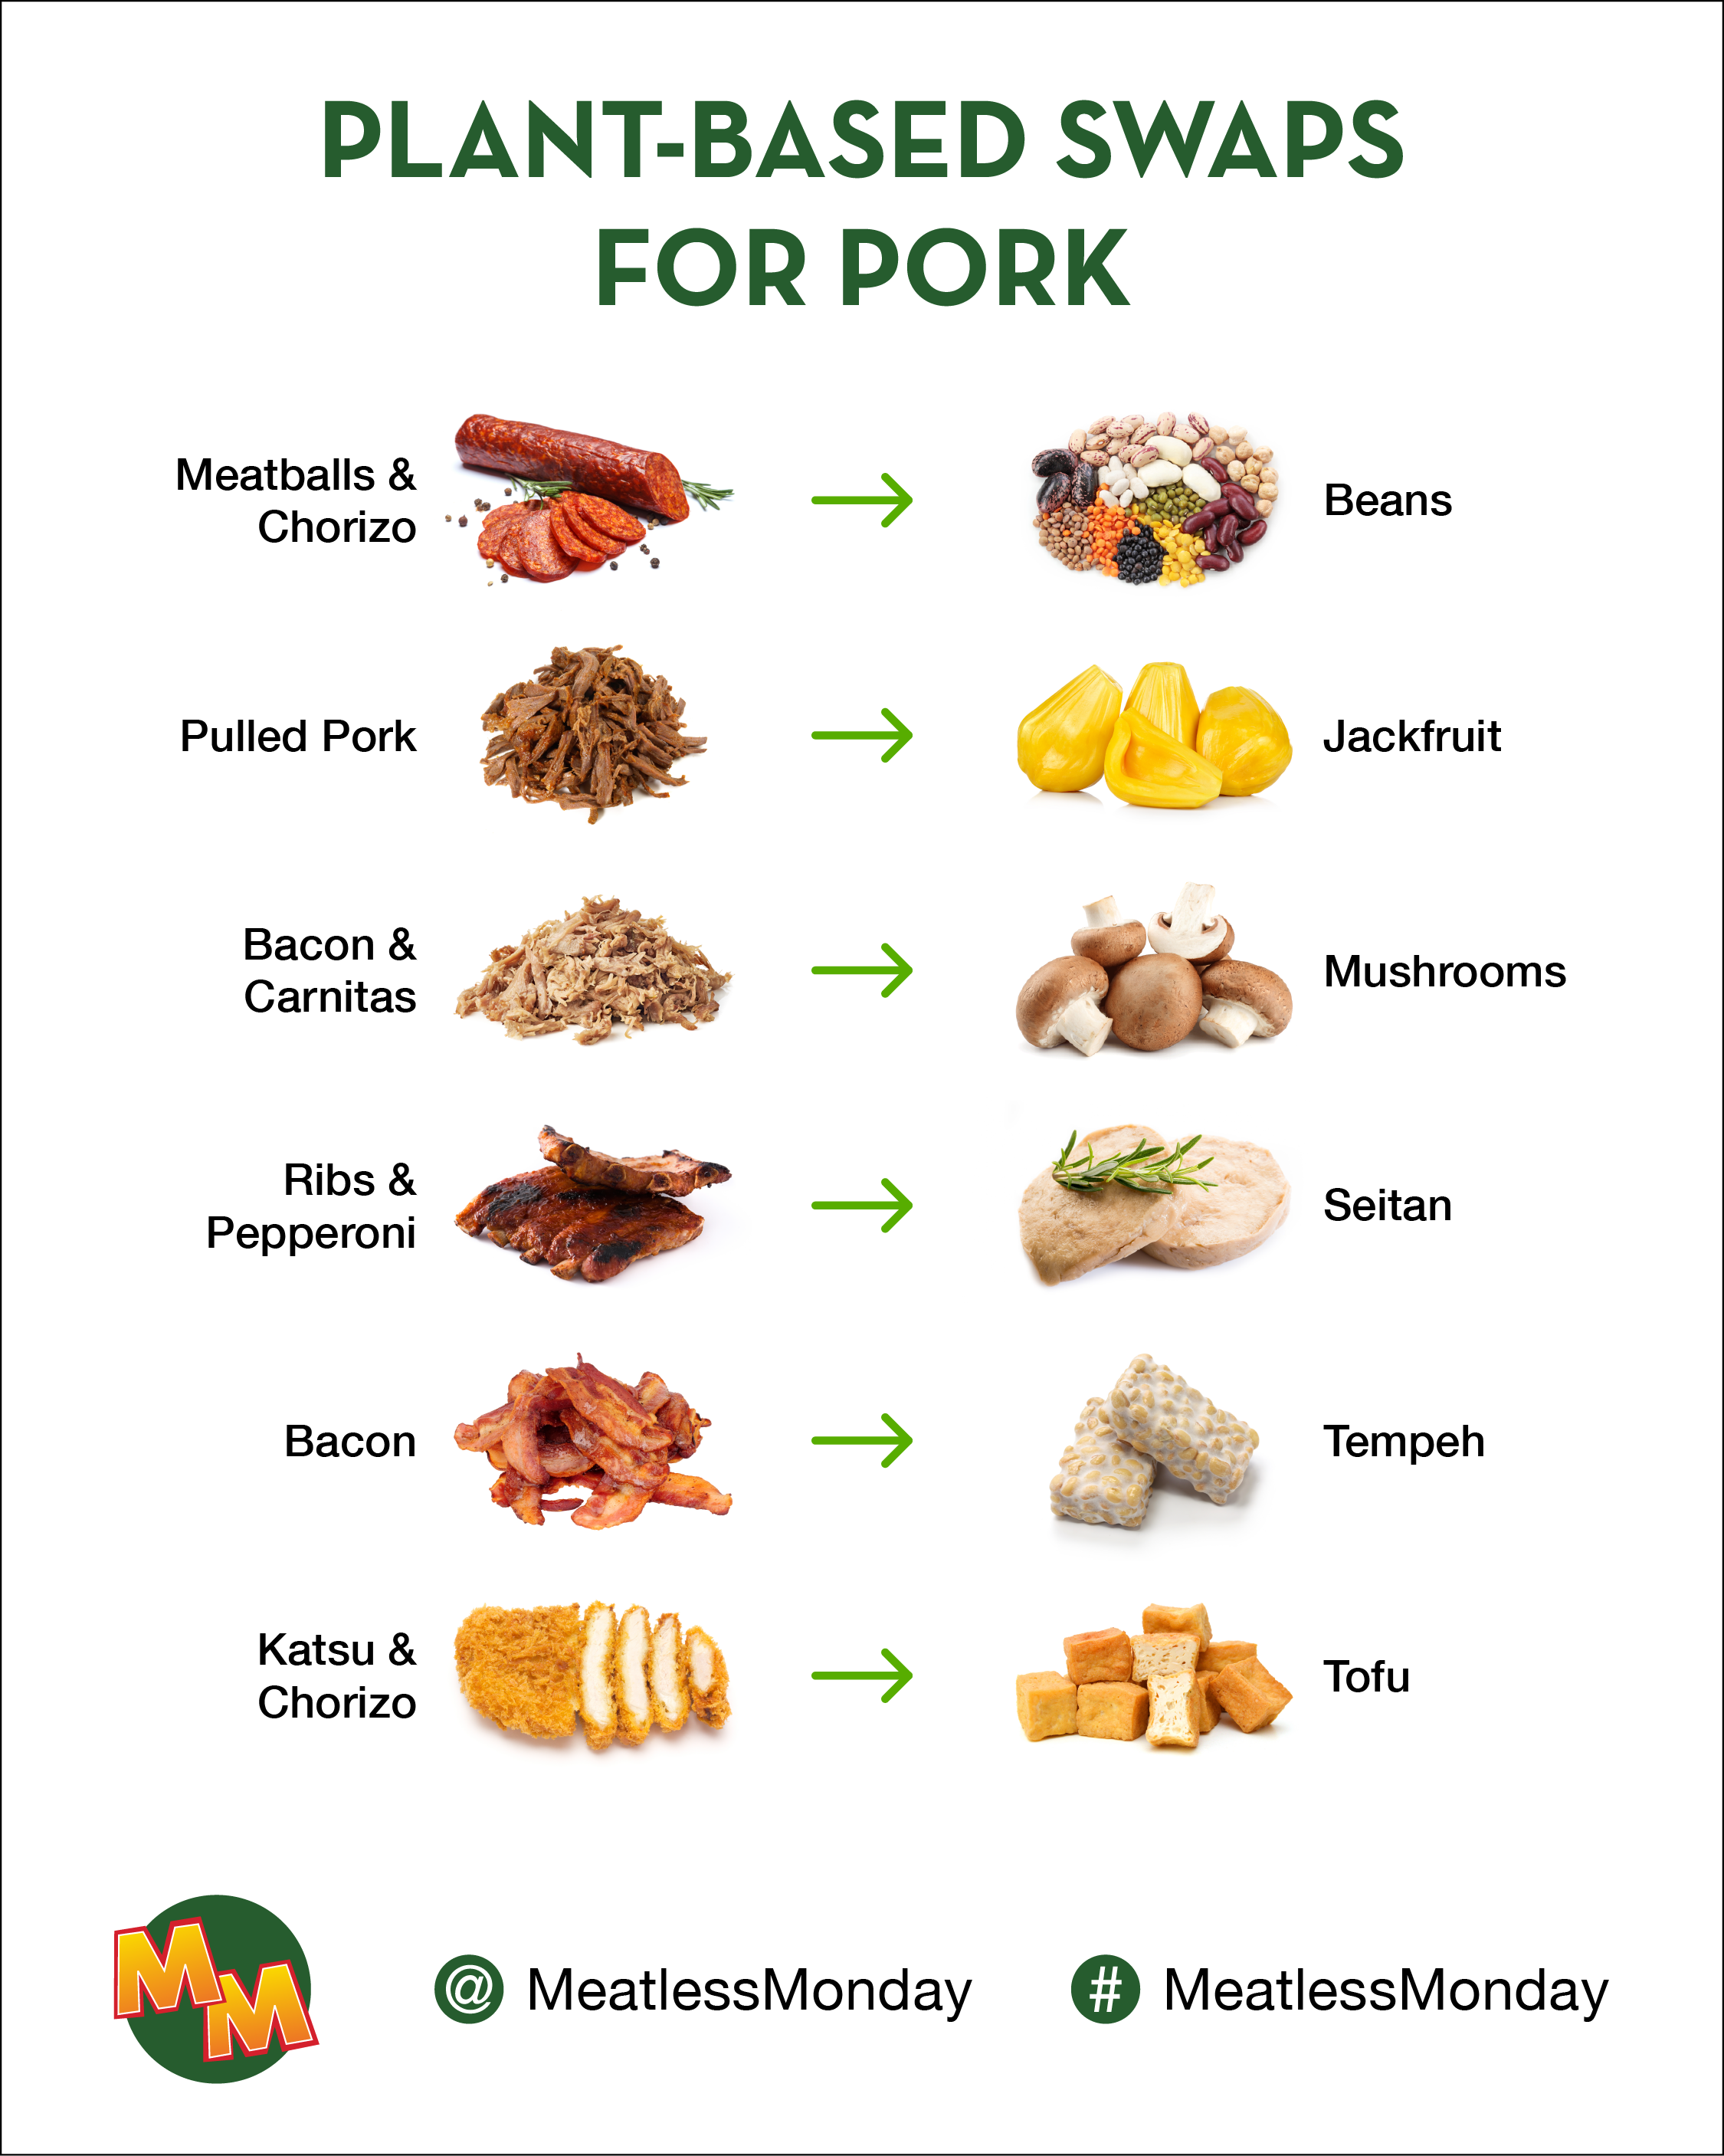 Plant-based swaps for pork